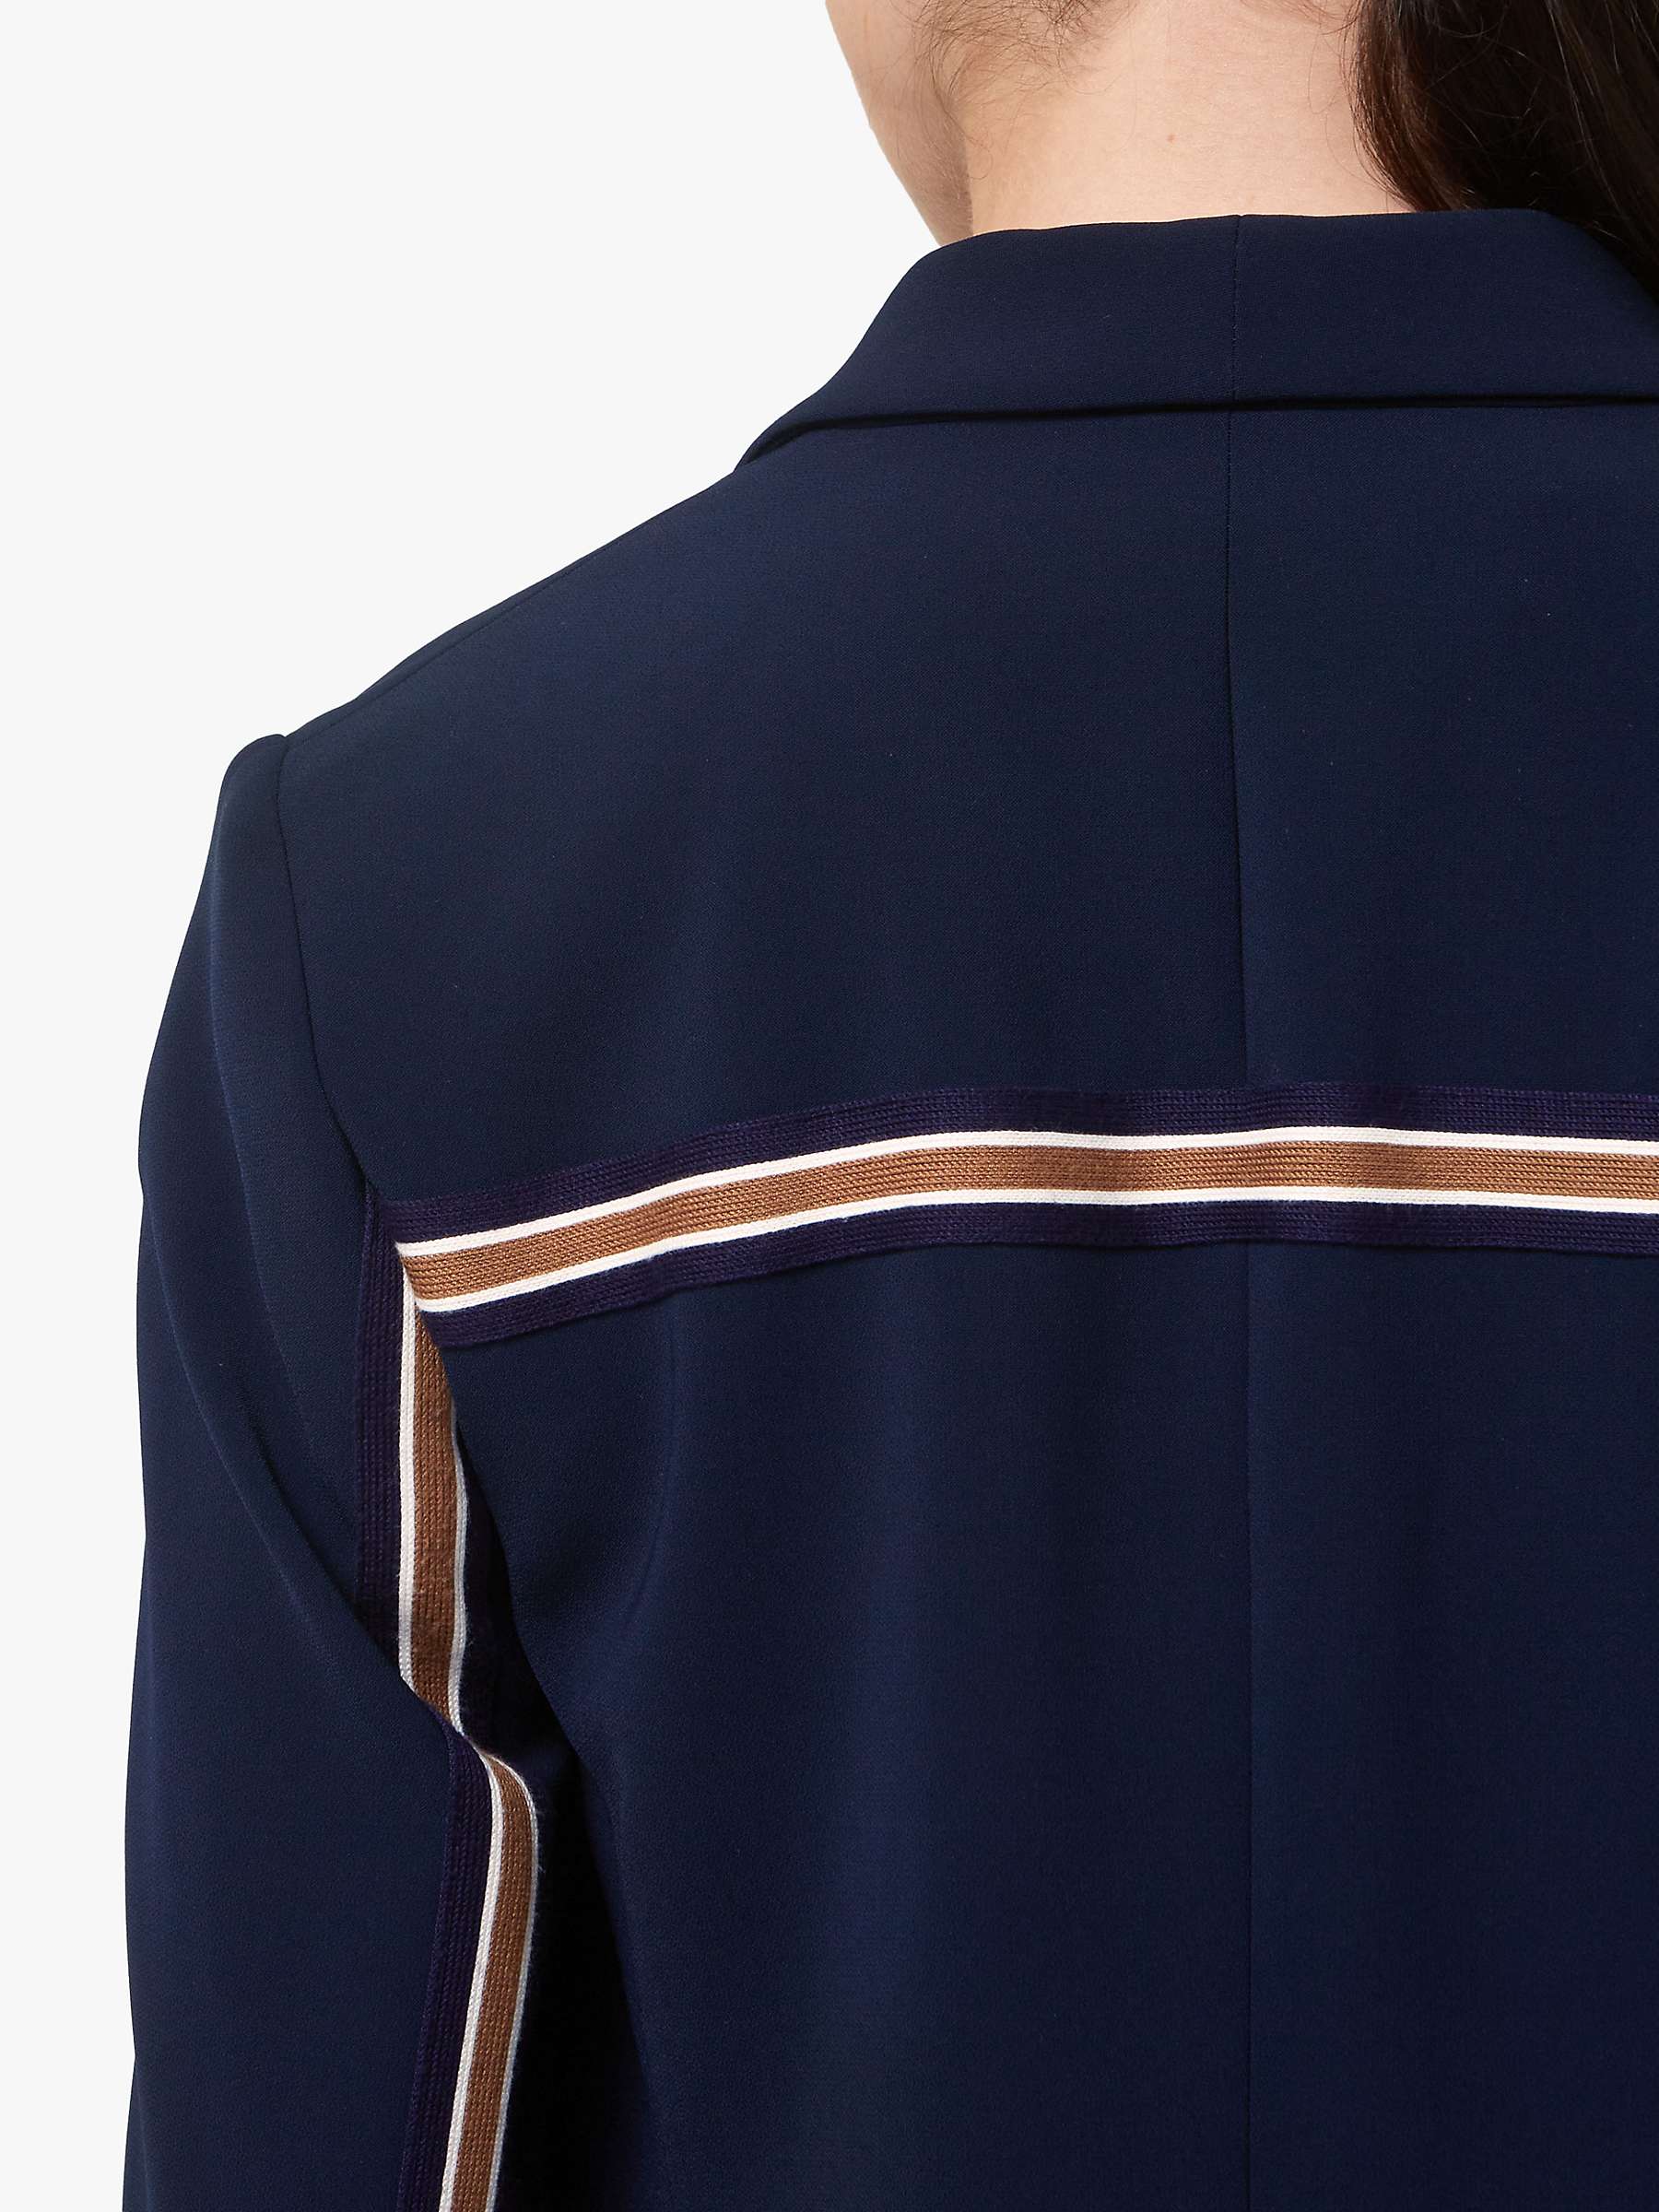 Buy Helen McAlinden Jade Striped Blazer Jacket, Midnight Online at johnlewis.com